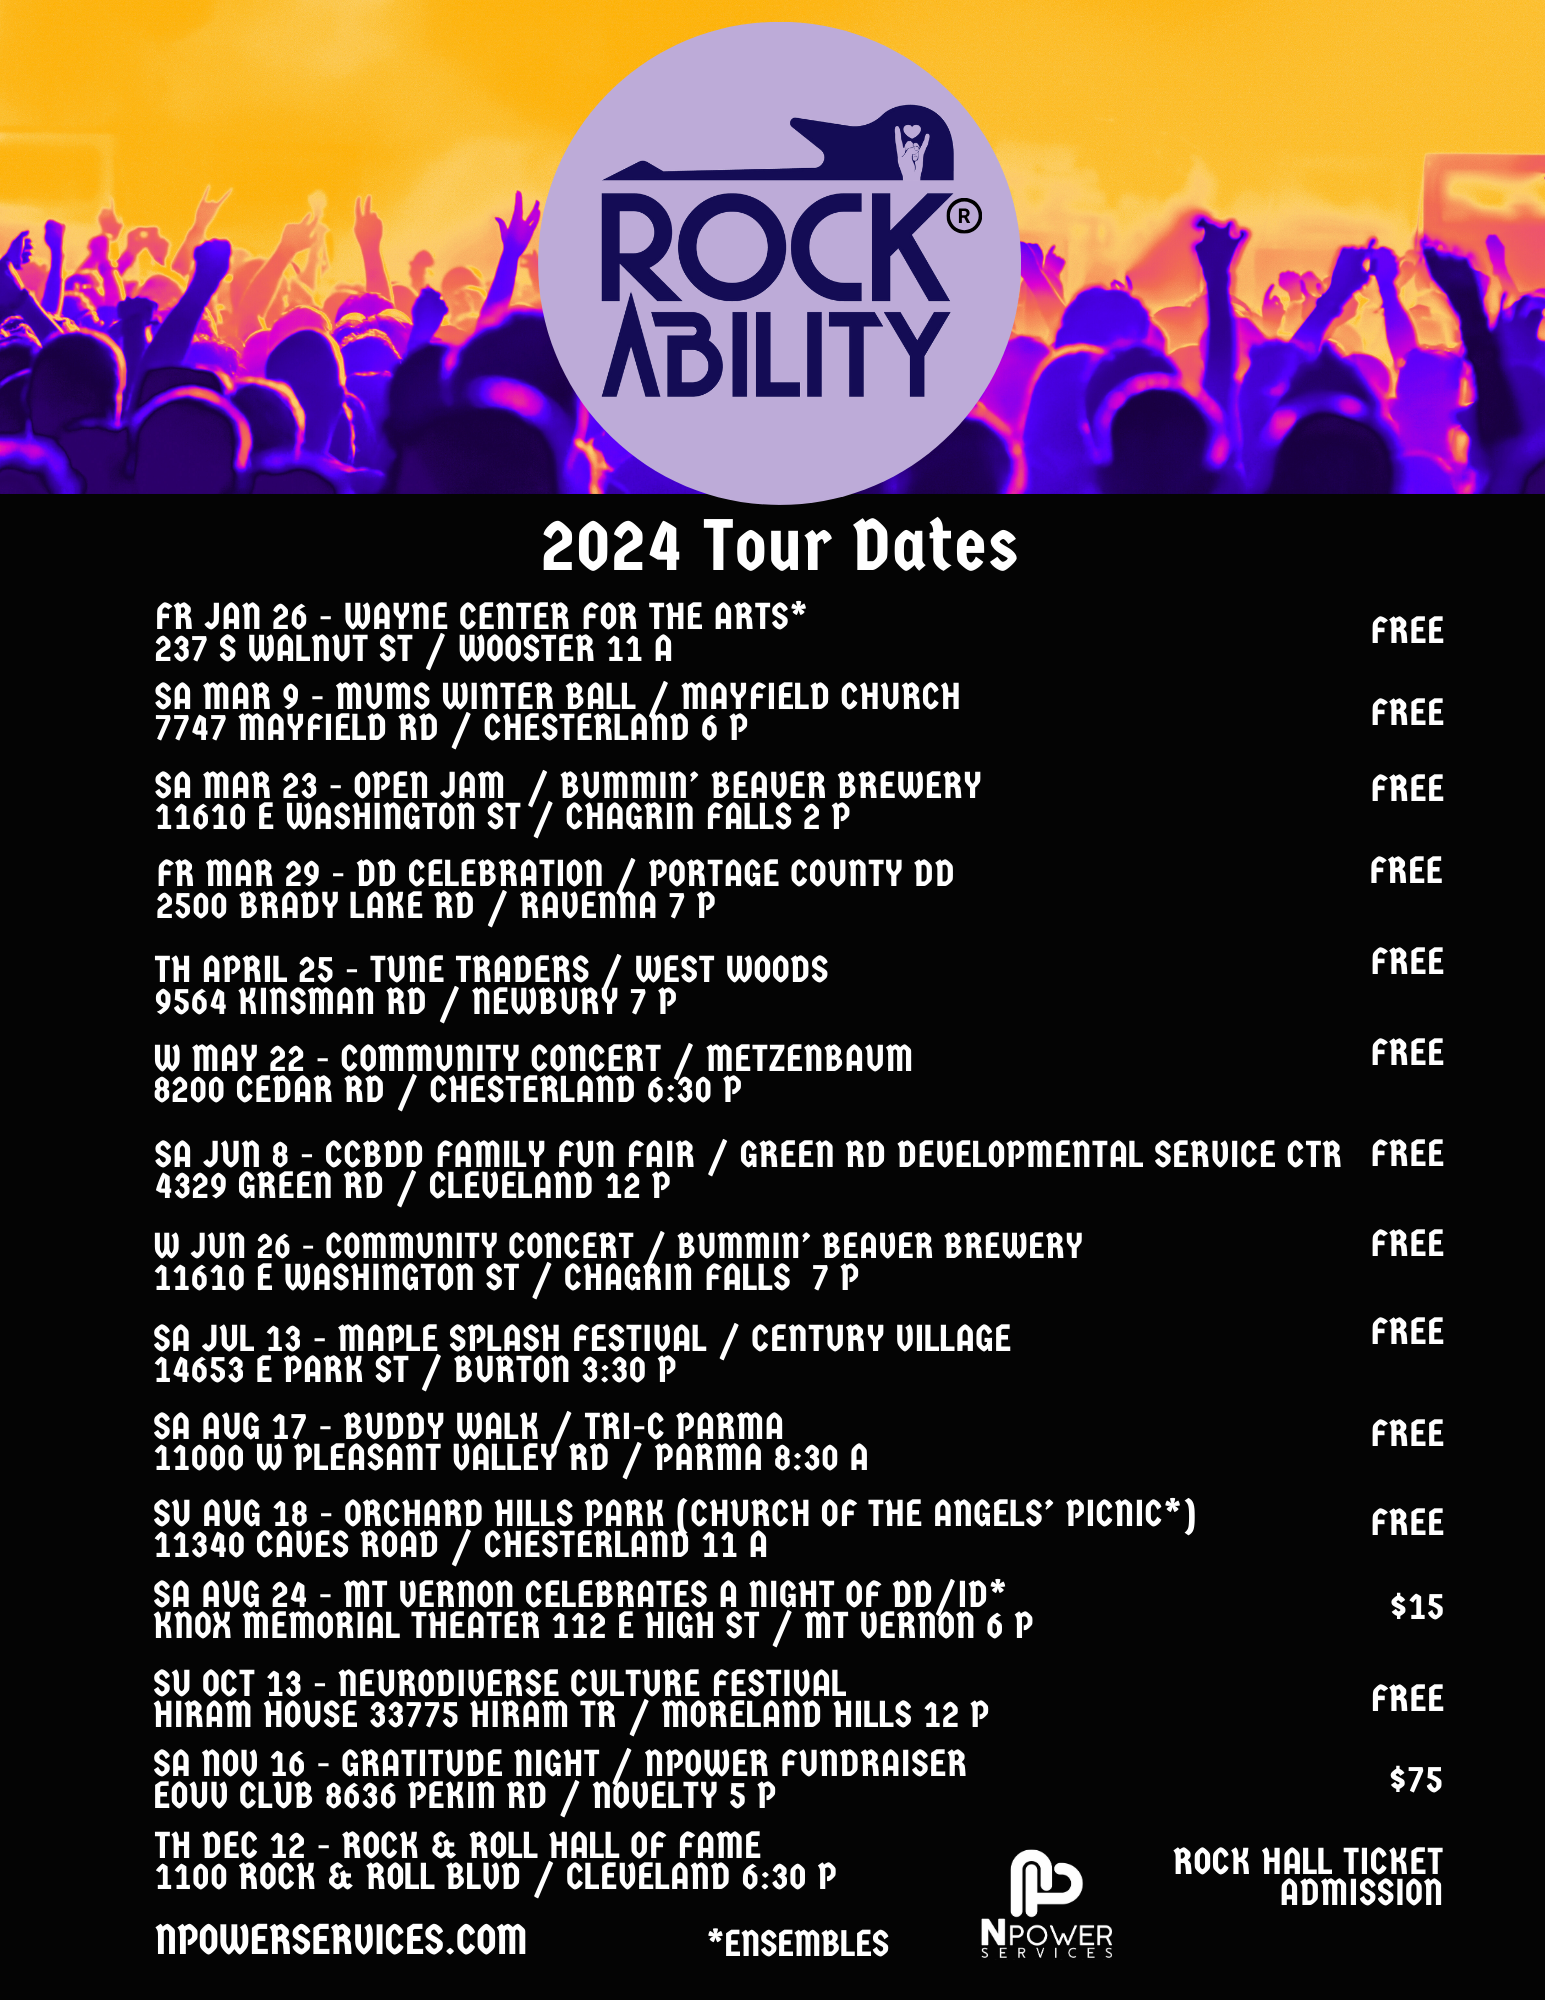 RockAbility 2024 Tour Dates 8.5x11 (2)